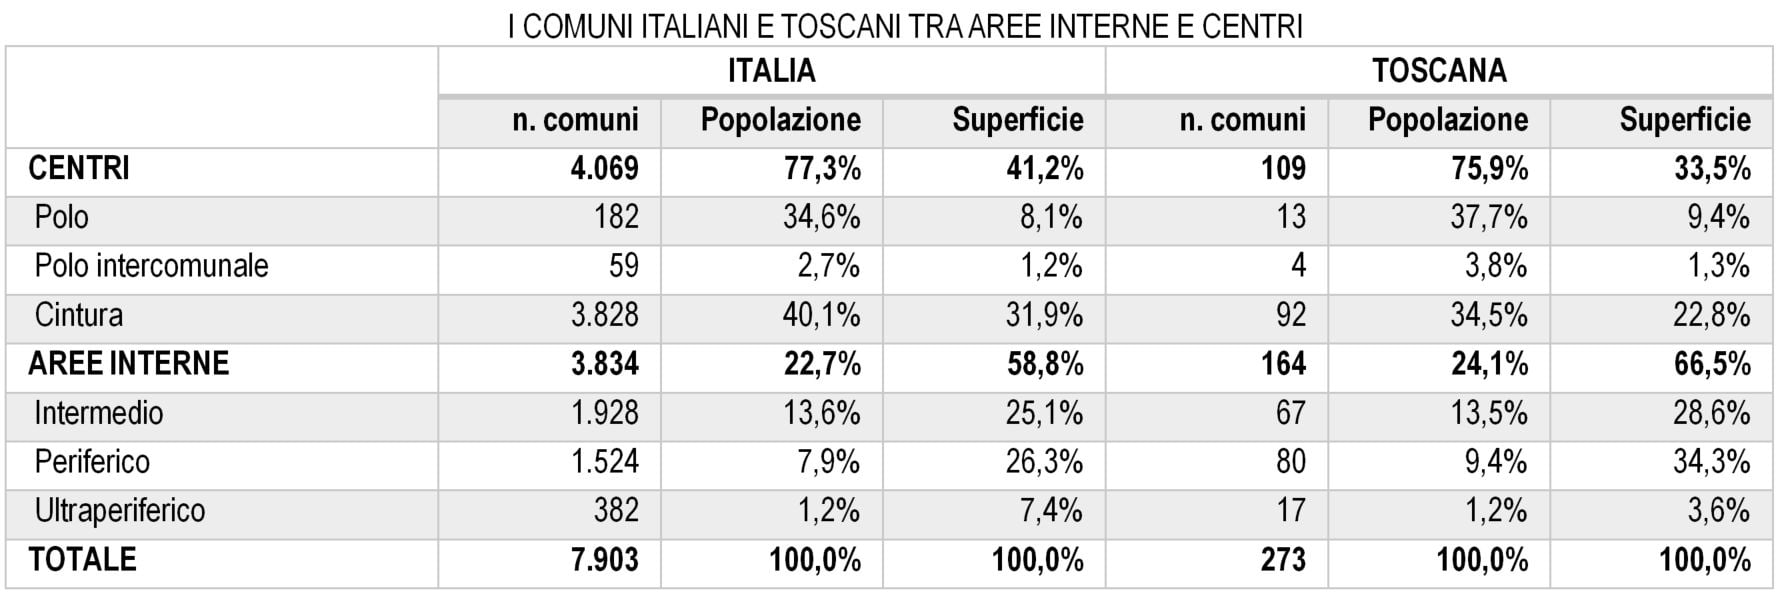 Tabella aree interne Italia Toscana